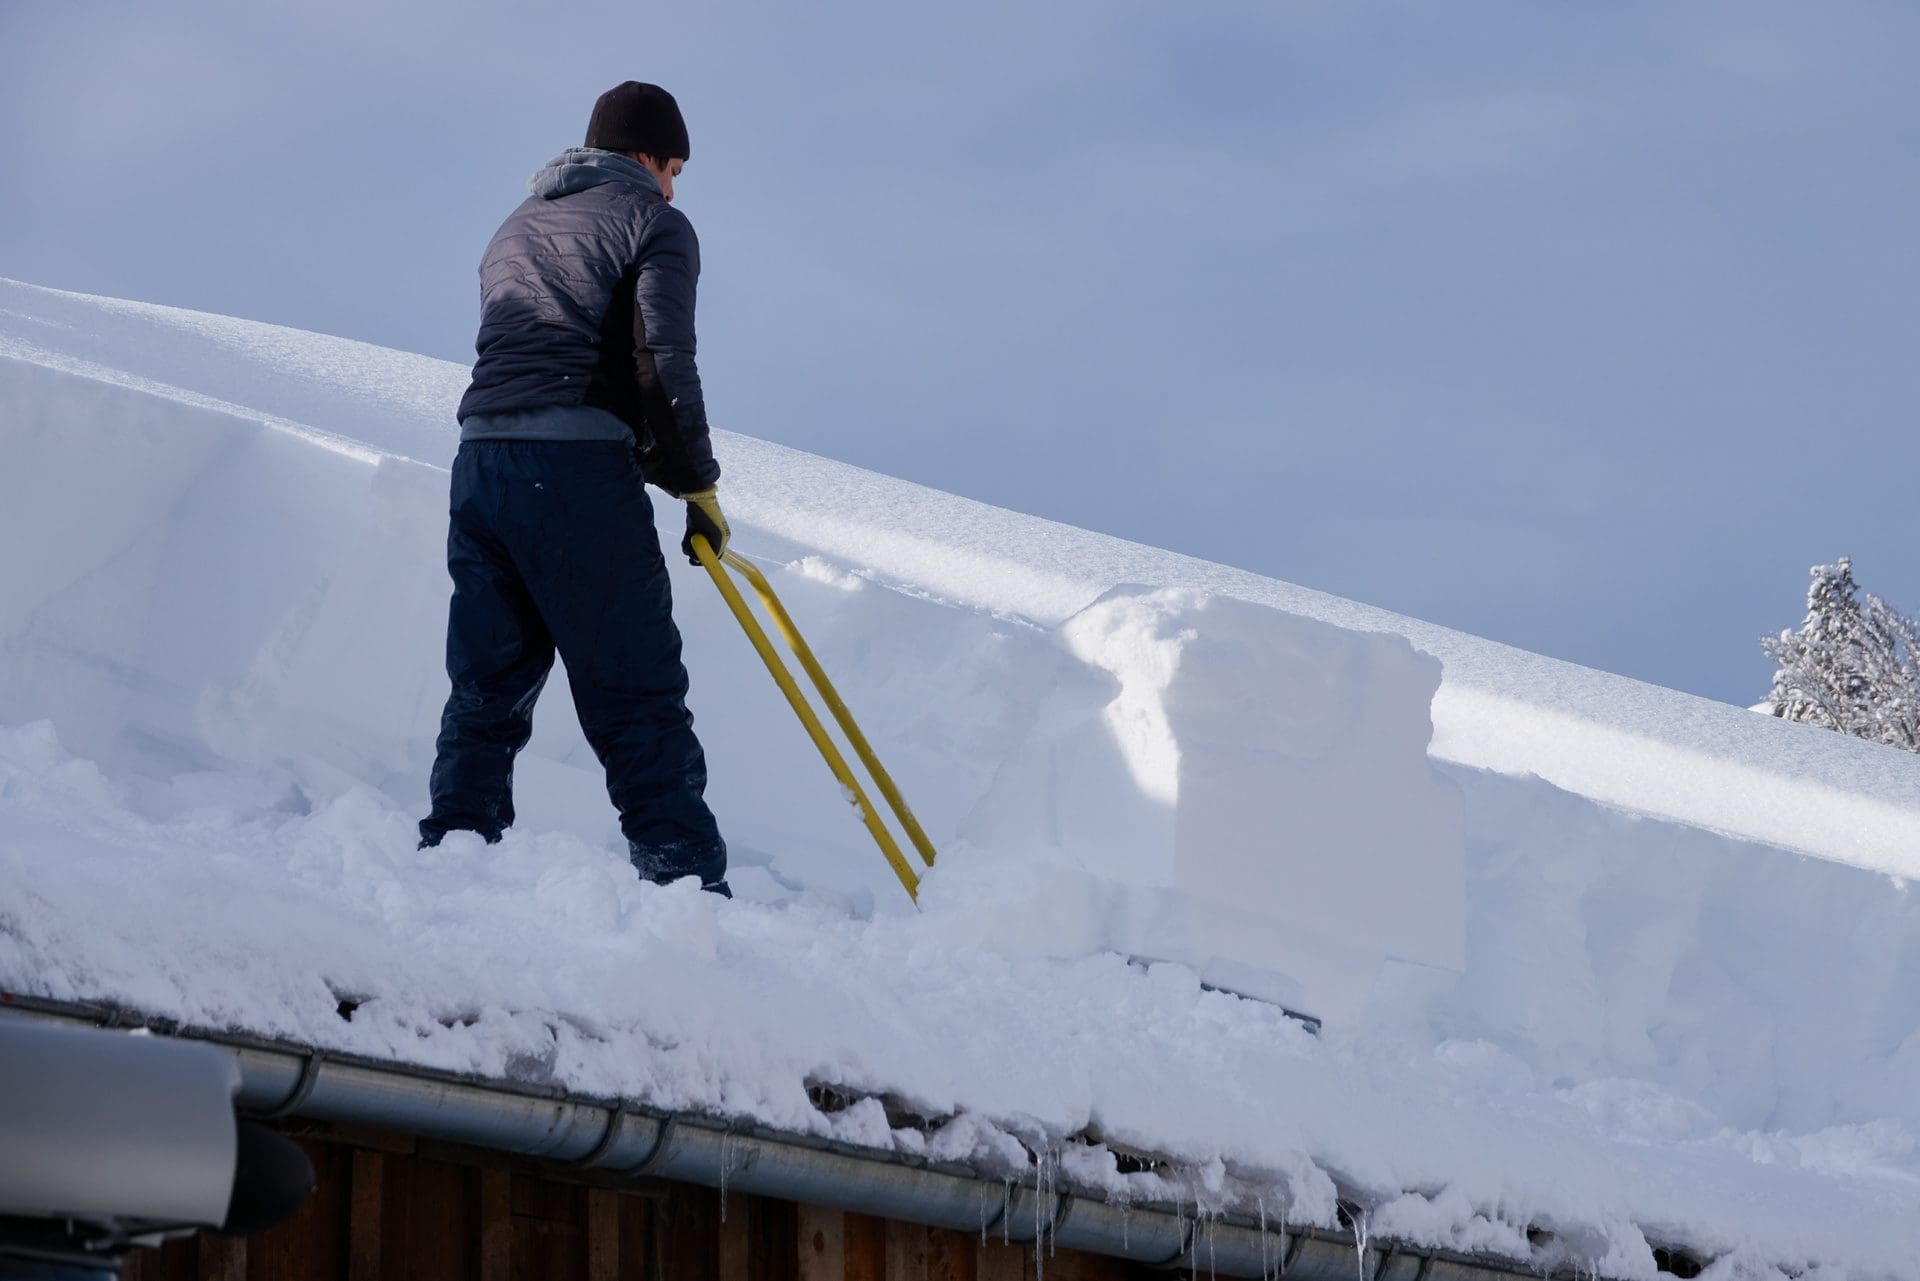 Wasserschaden durch Schnee: Wo so viel Schnee auf dem Dach lastet, ist das Risiko nicht zu vernachlässigen. Doch wie sind Schäden infolge von Schnee versichert?! (© Michael Fritzen / stock.adobe.com)